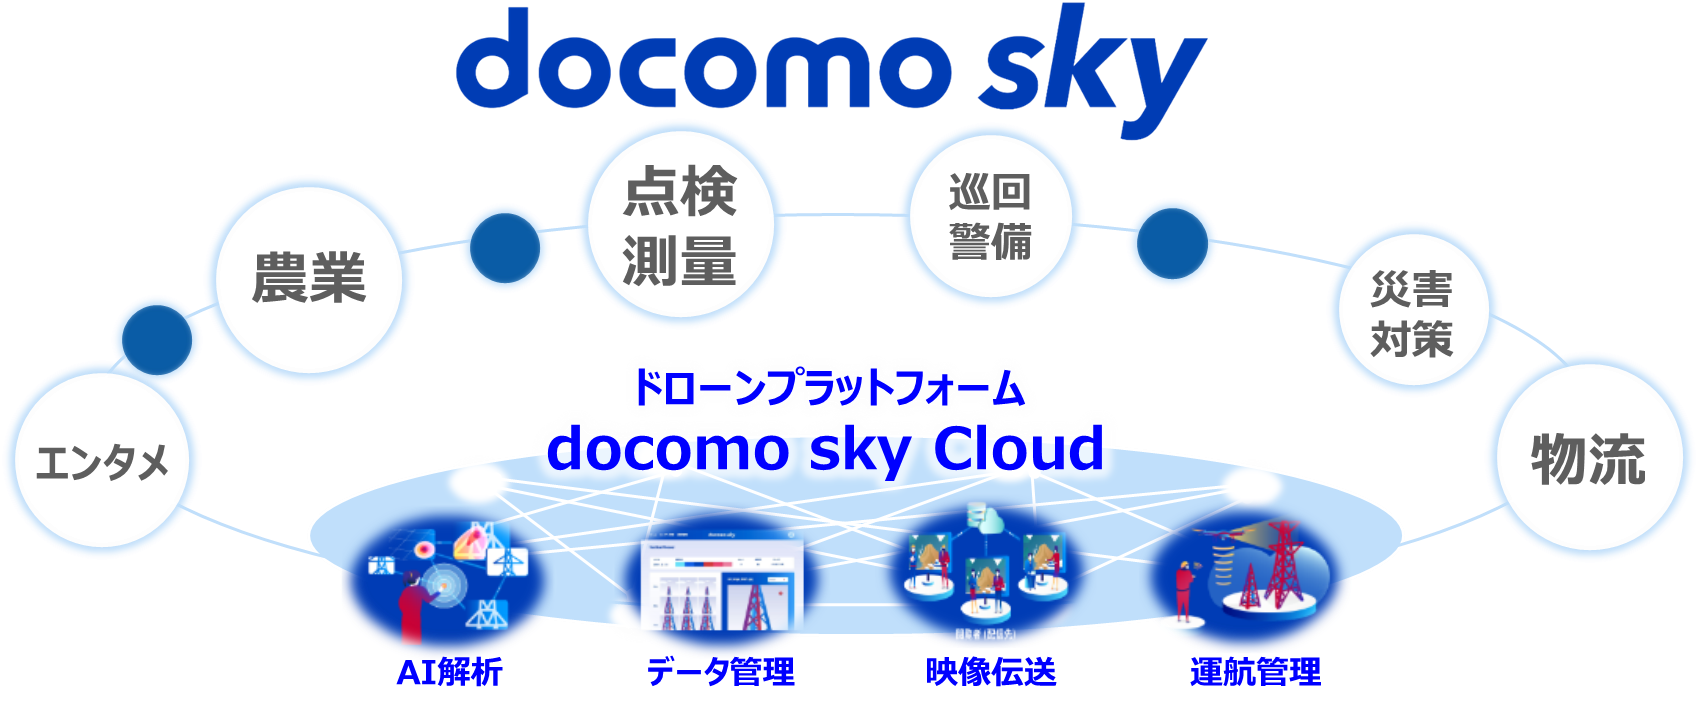 ドコモのドローン事業「docomo sky」